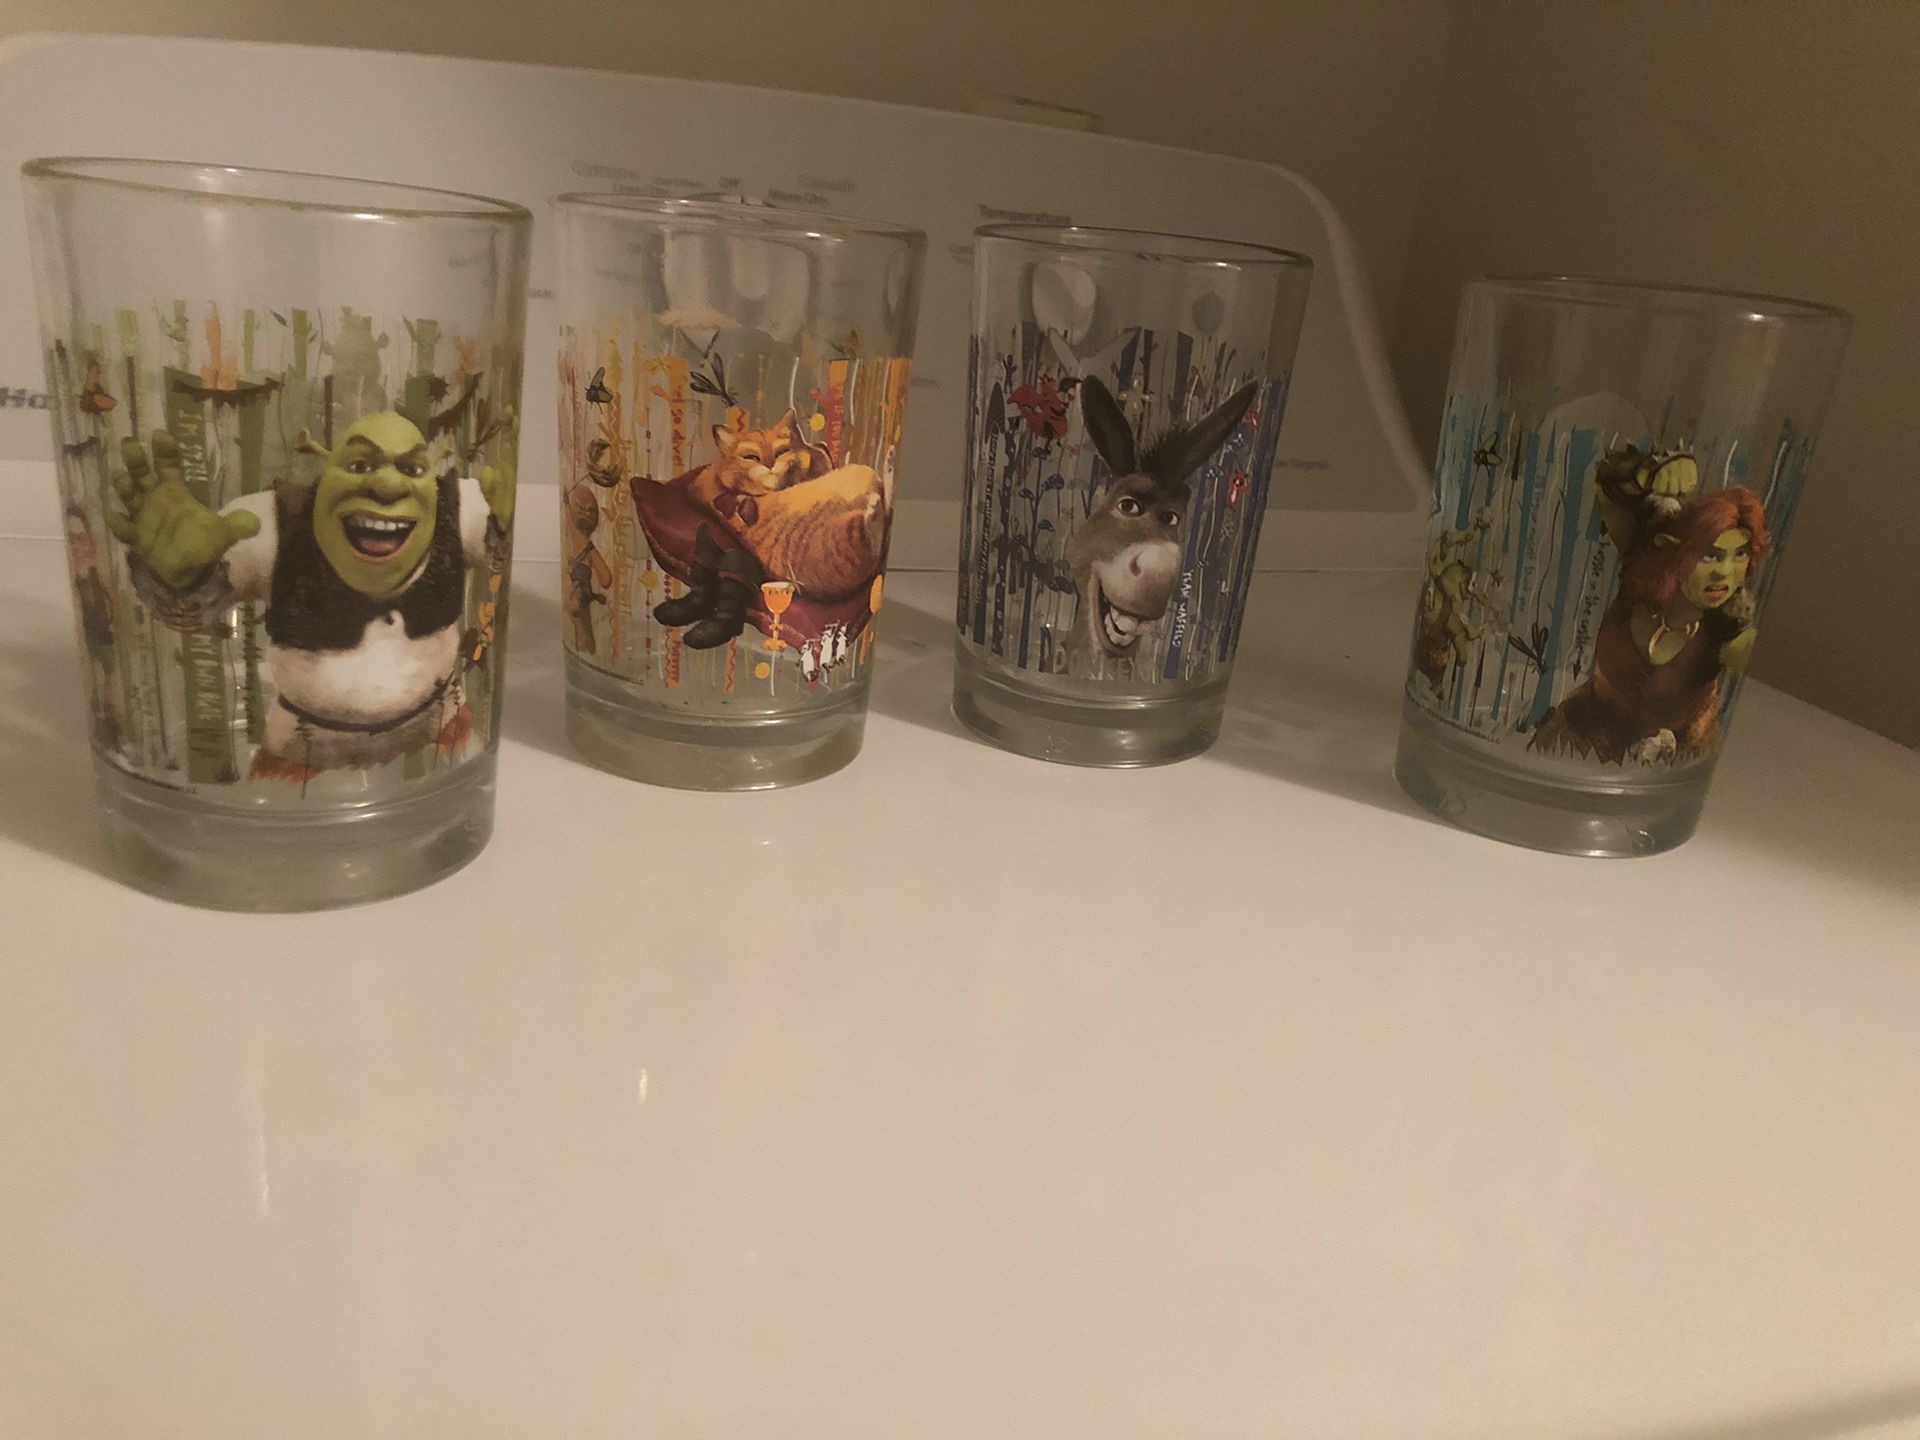 Shrek 4 Glasses